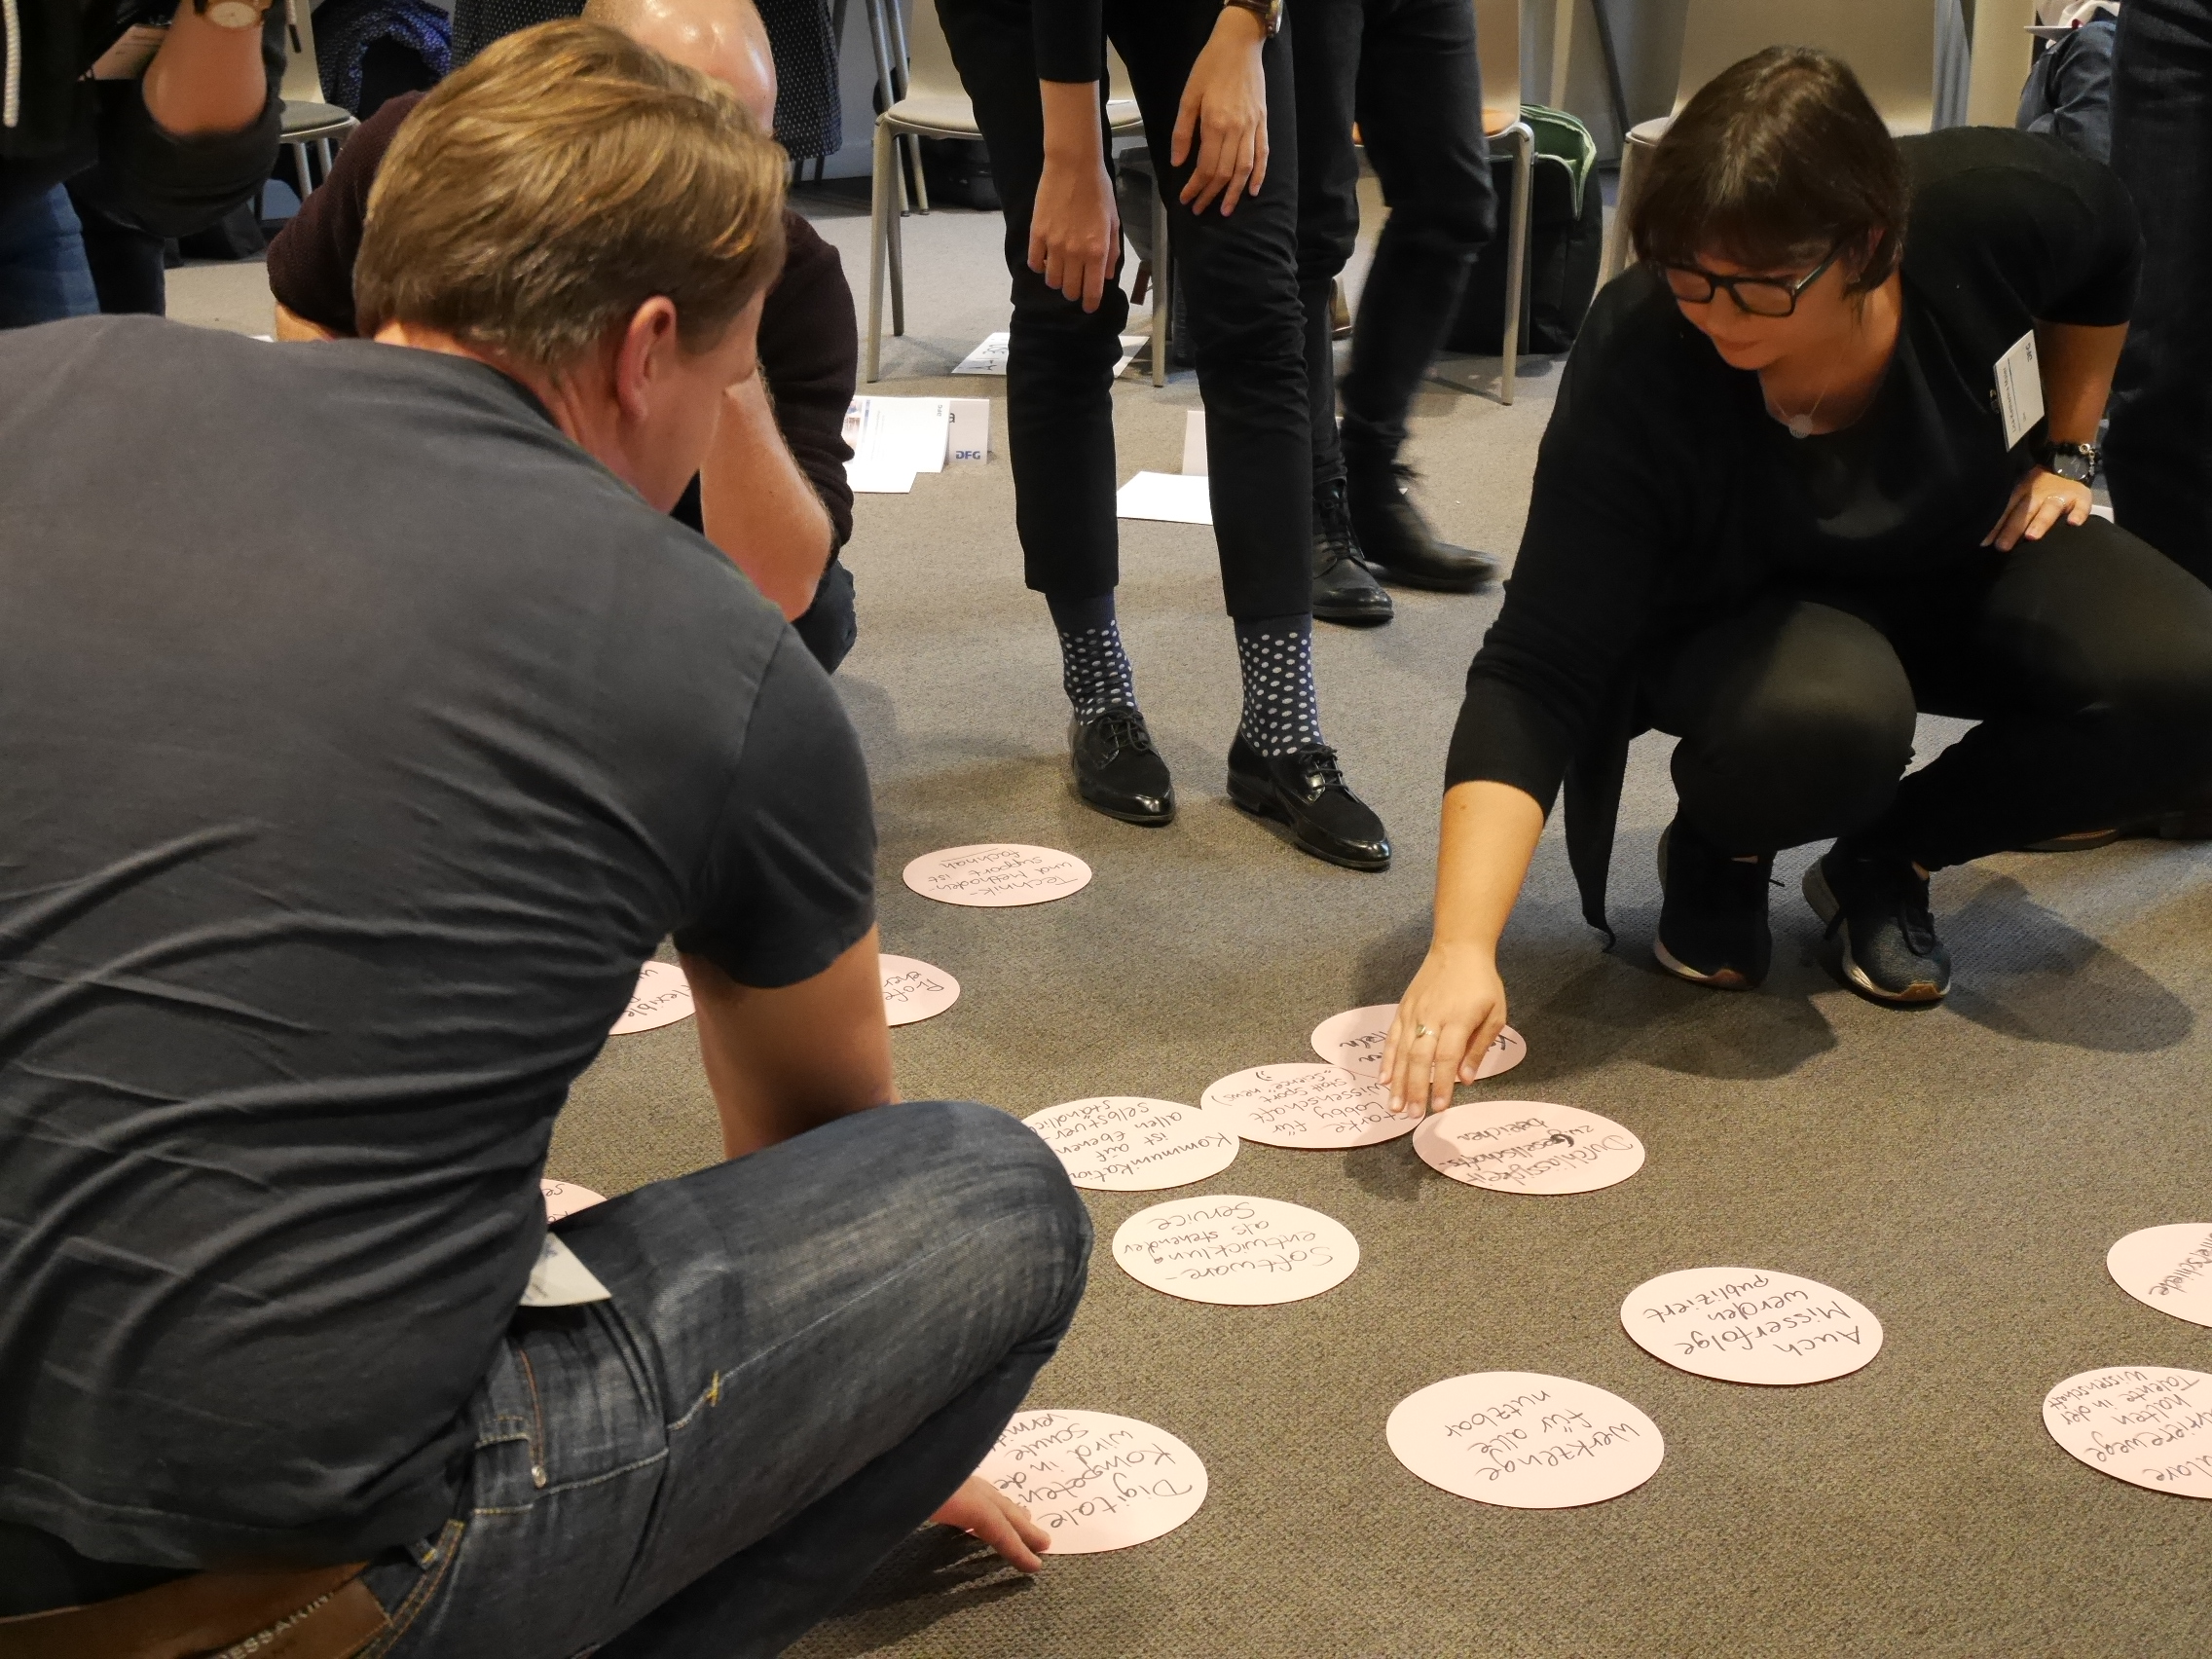 Teilnehmende arbeiten am Boden mit Moderationskarten